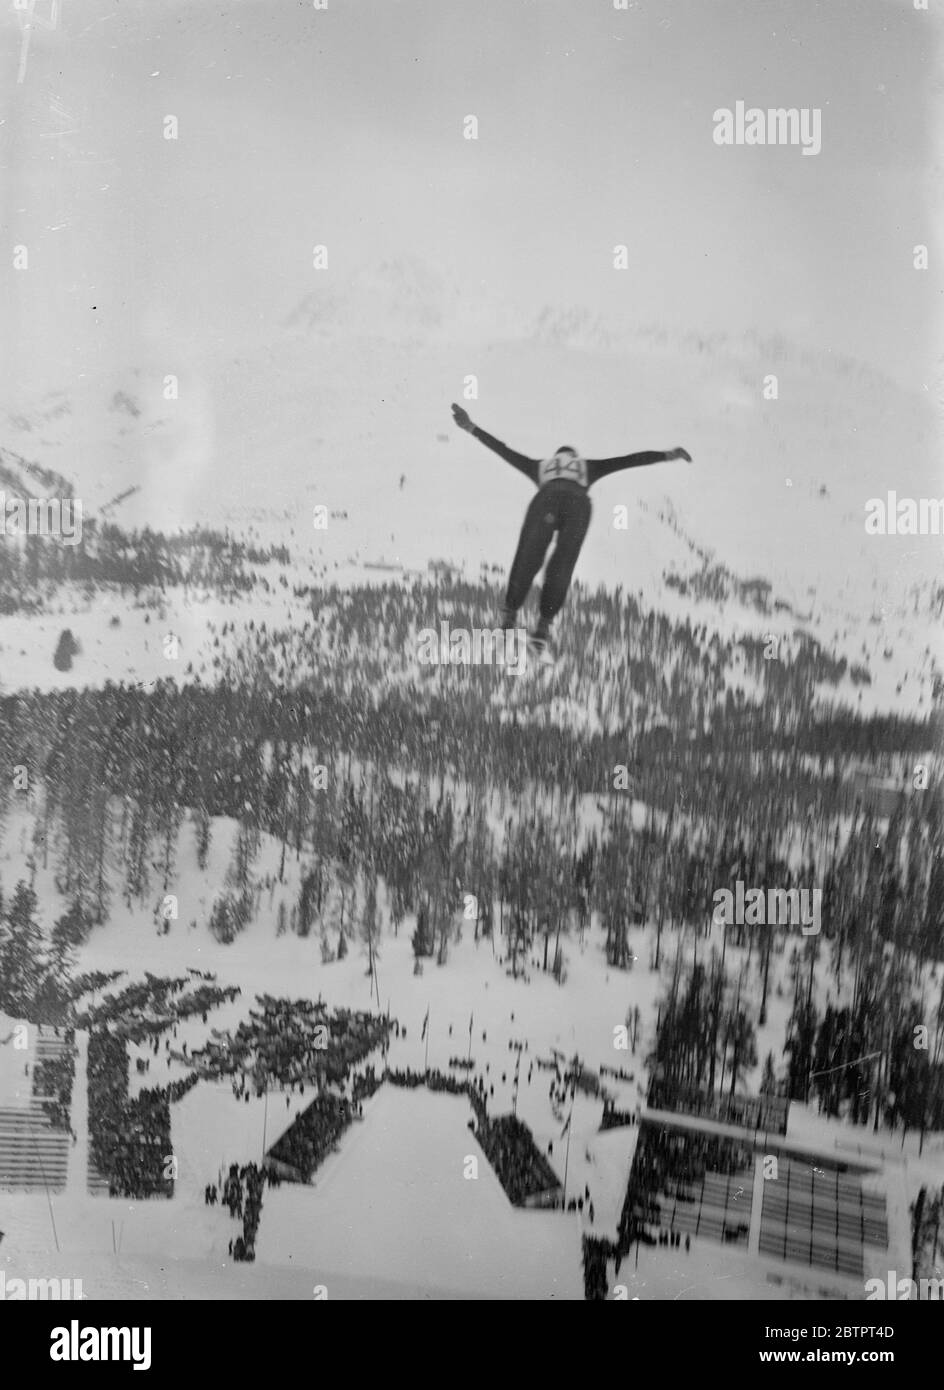 Saut à ski dans le ciel. Buhler Richard, le champion suisse, semble survoler le paysage enneigé pendant qu'il effectue un parcours de ski spécifique à St Moritz, la station suisse. 31 décembre 1937 Banque D'Images